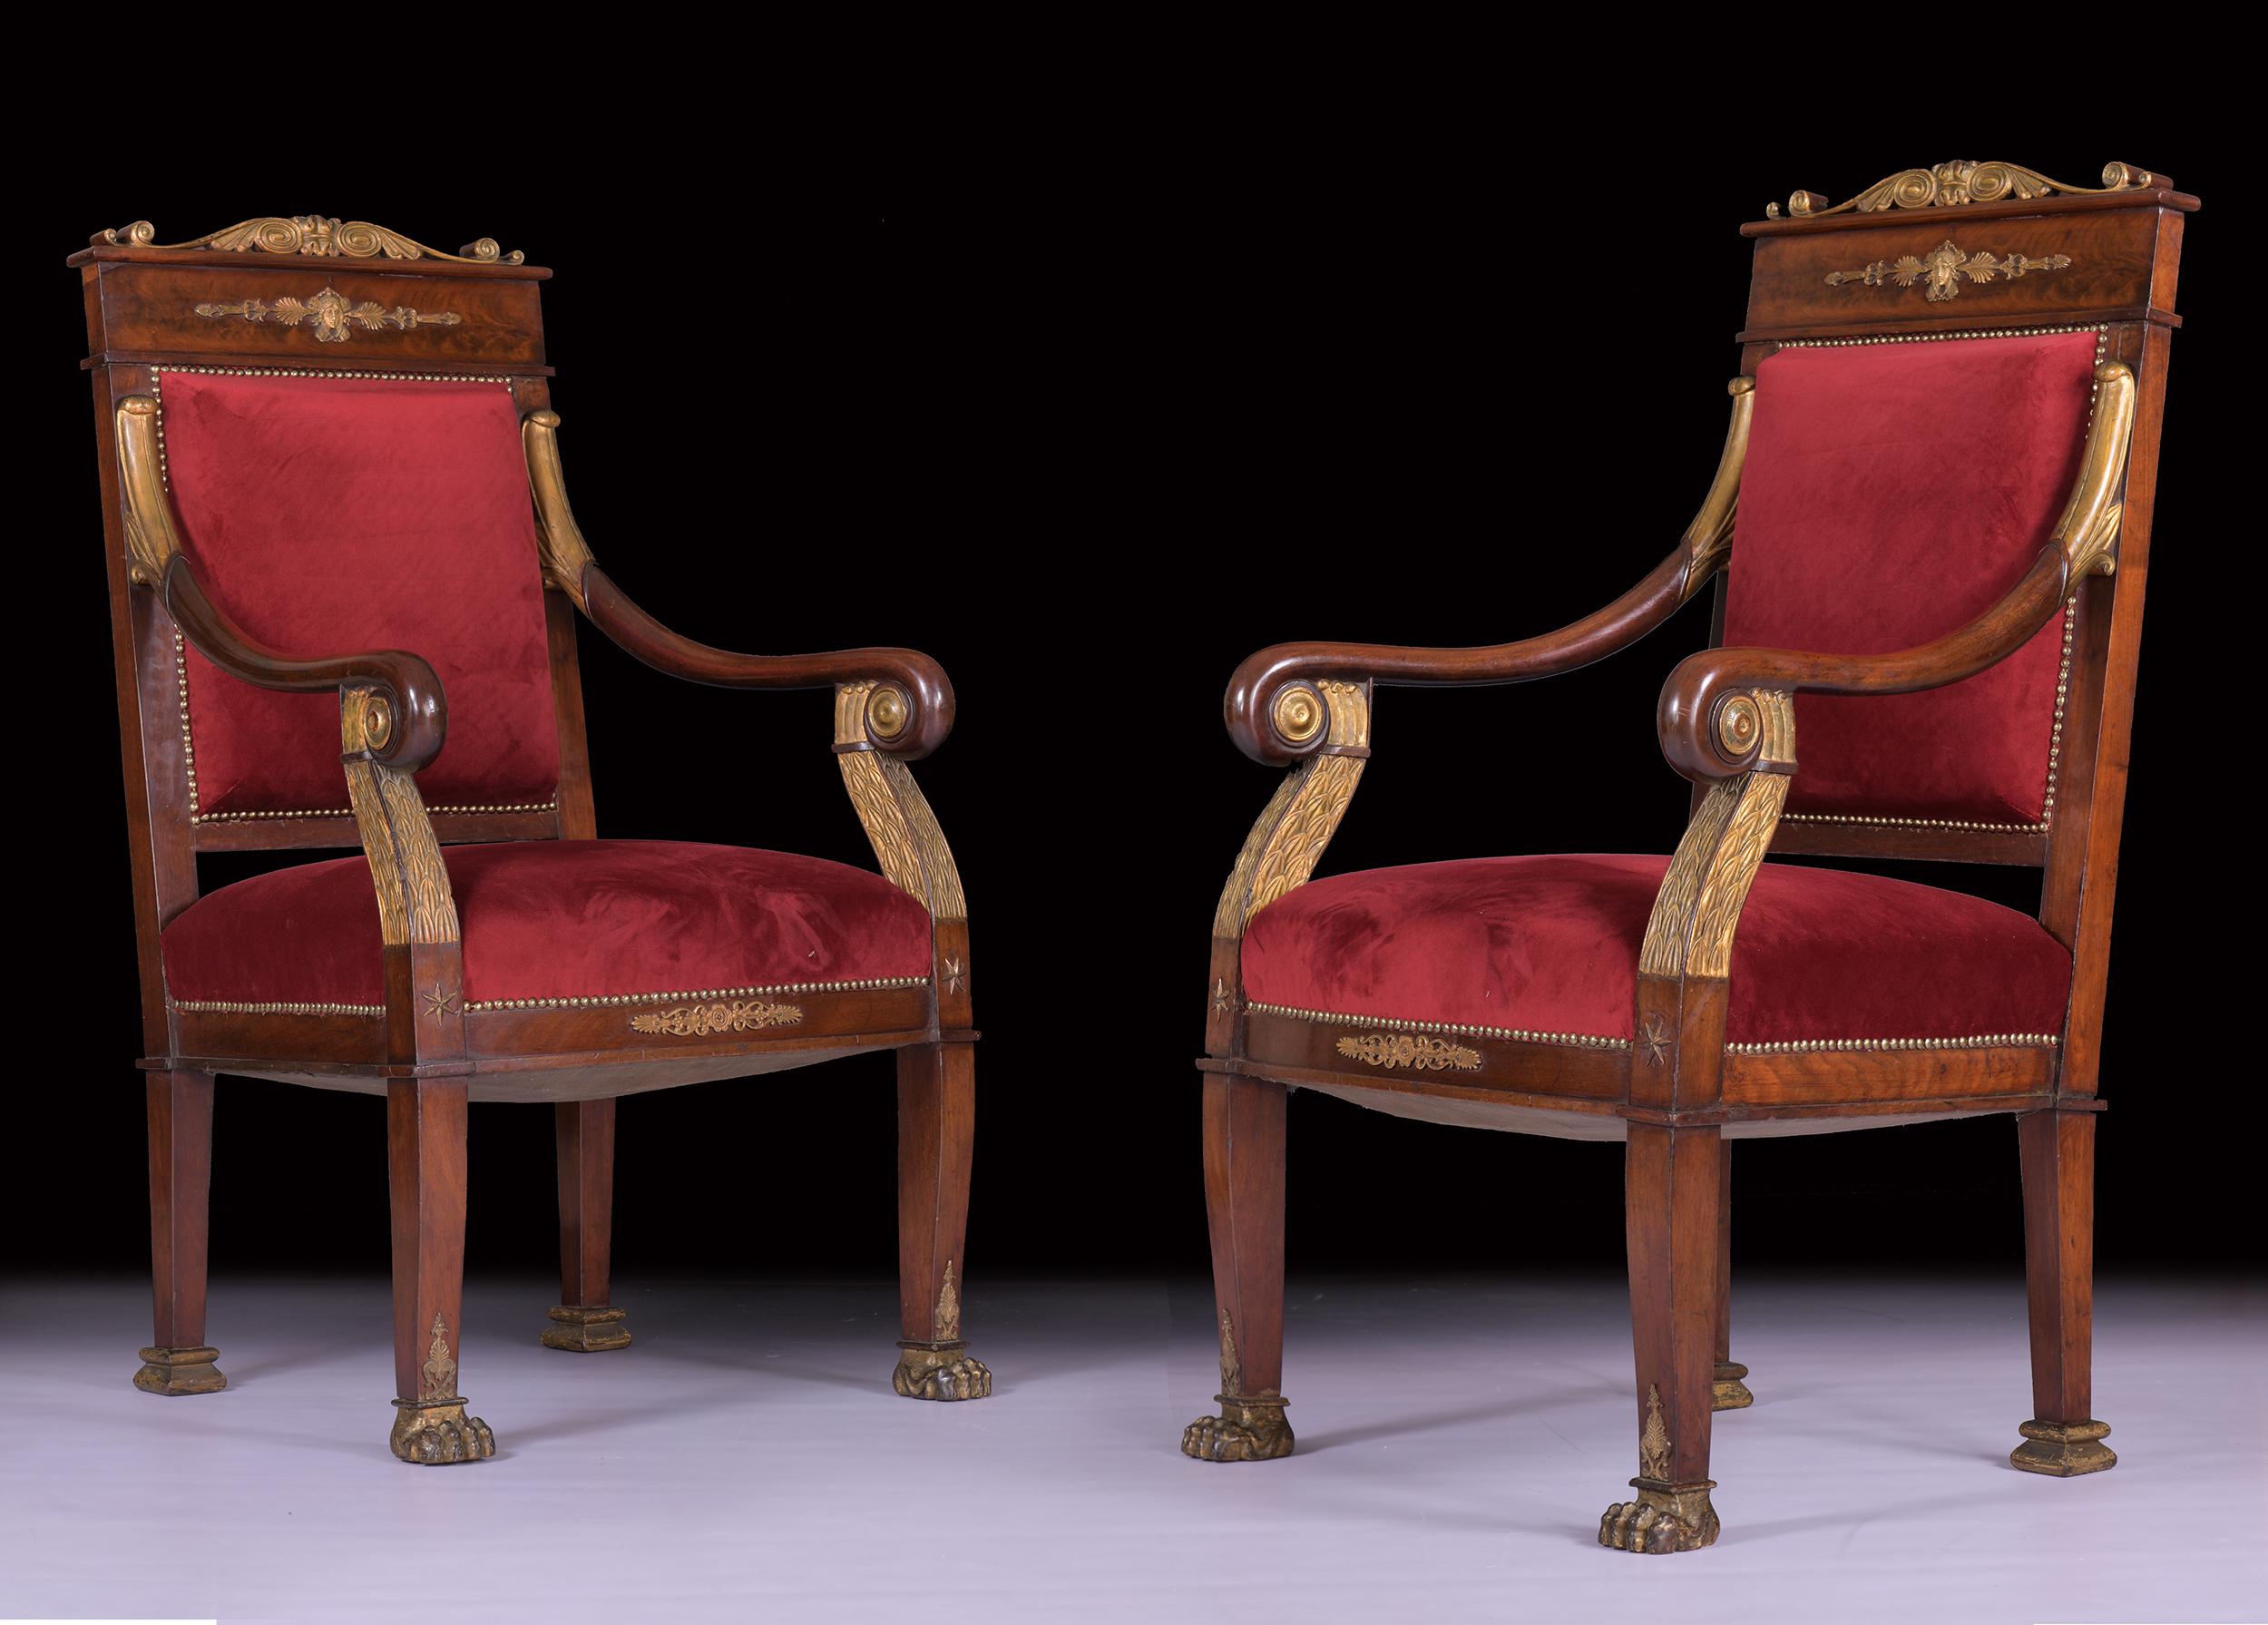 Ein außergewöhnliches Paar französischer Empire-Sessel aus Mahagoni des frühen 19. Jahrhunderts mit Ormolu-Beschlägen, die Jacob-Desmalter (1770-1841) zugeschrieben werden, gepolstert mit auffallend tiefrotem Samt, auf quadratischen, konischen